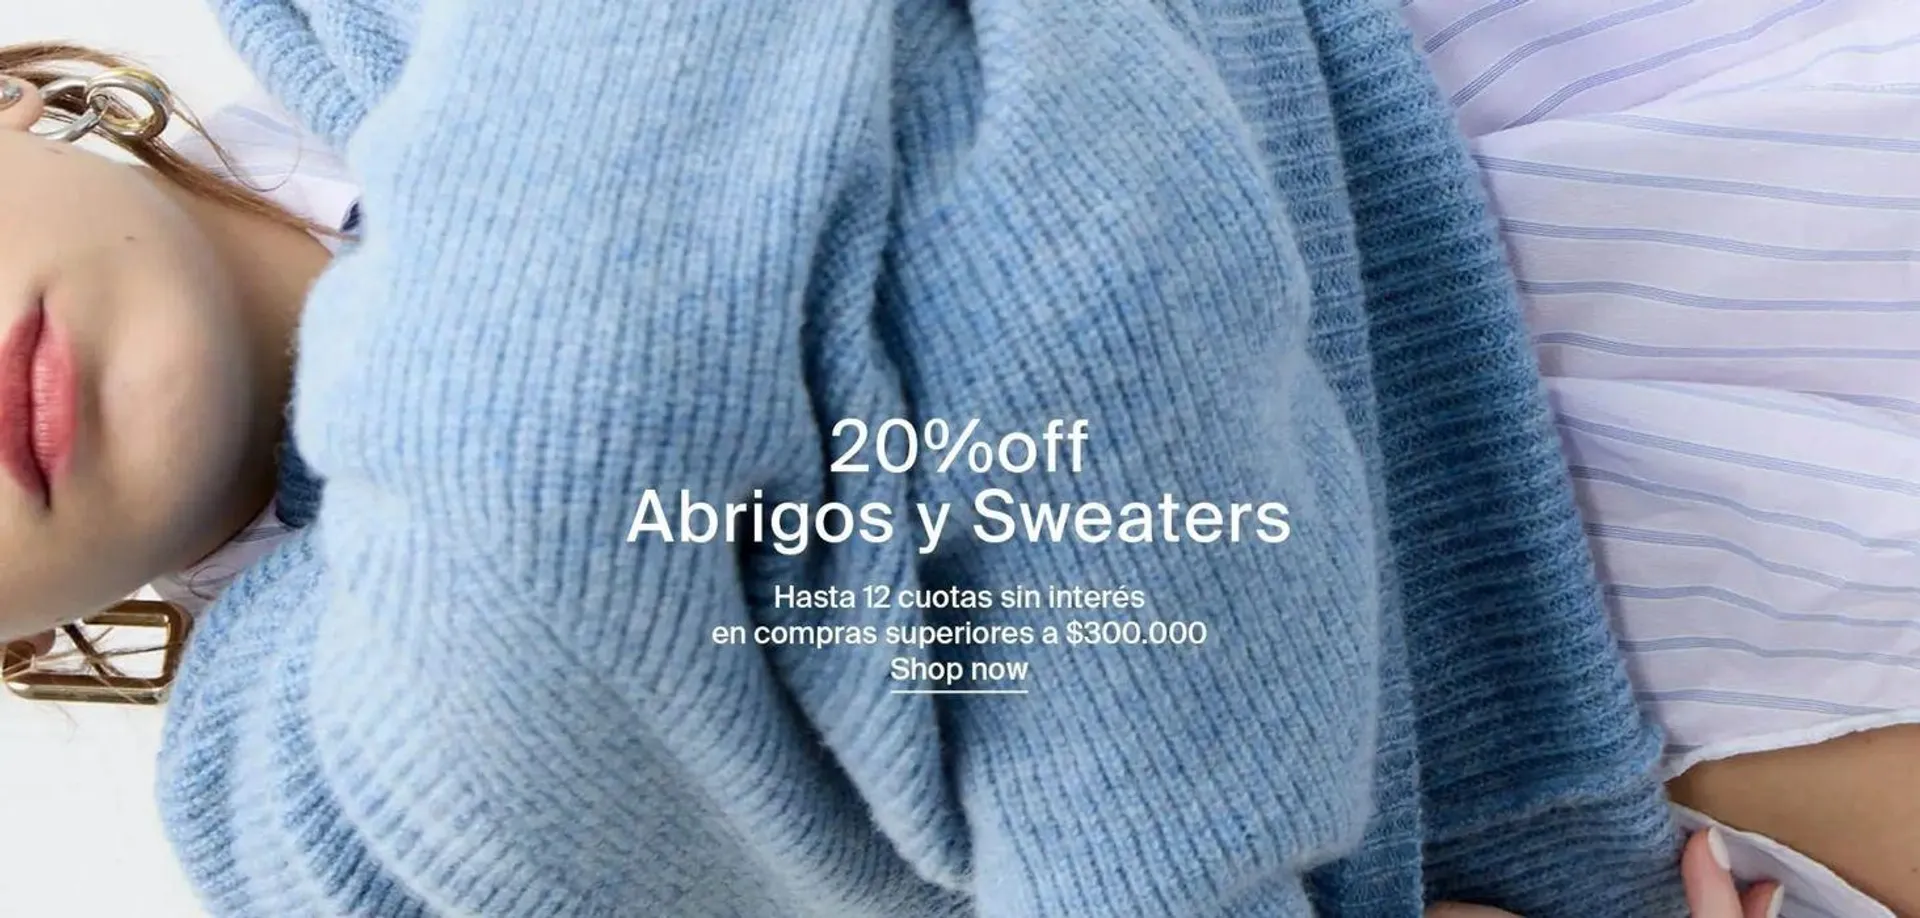 20% off Abrigos y Sweaters - 1